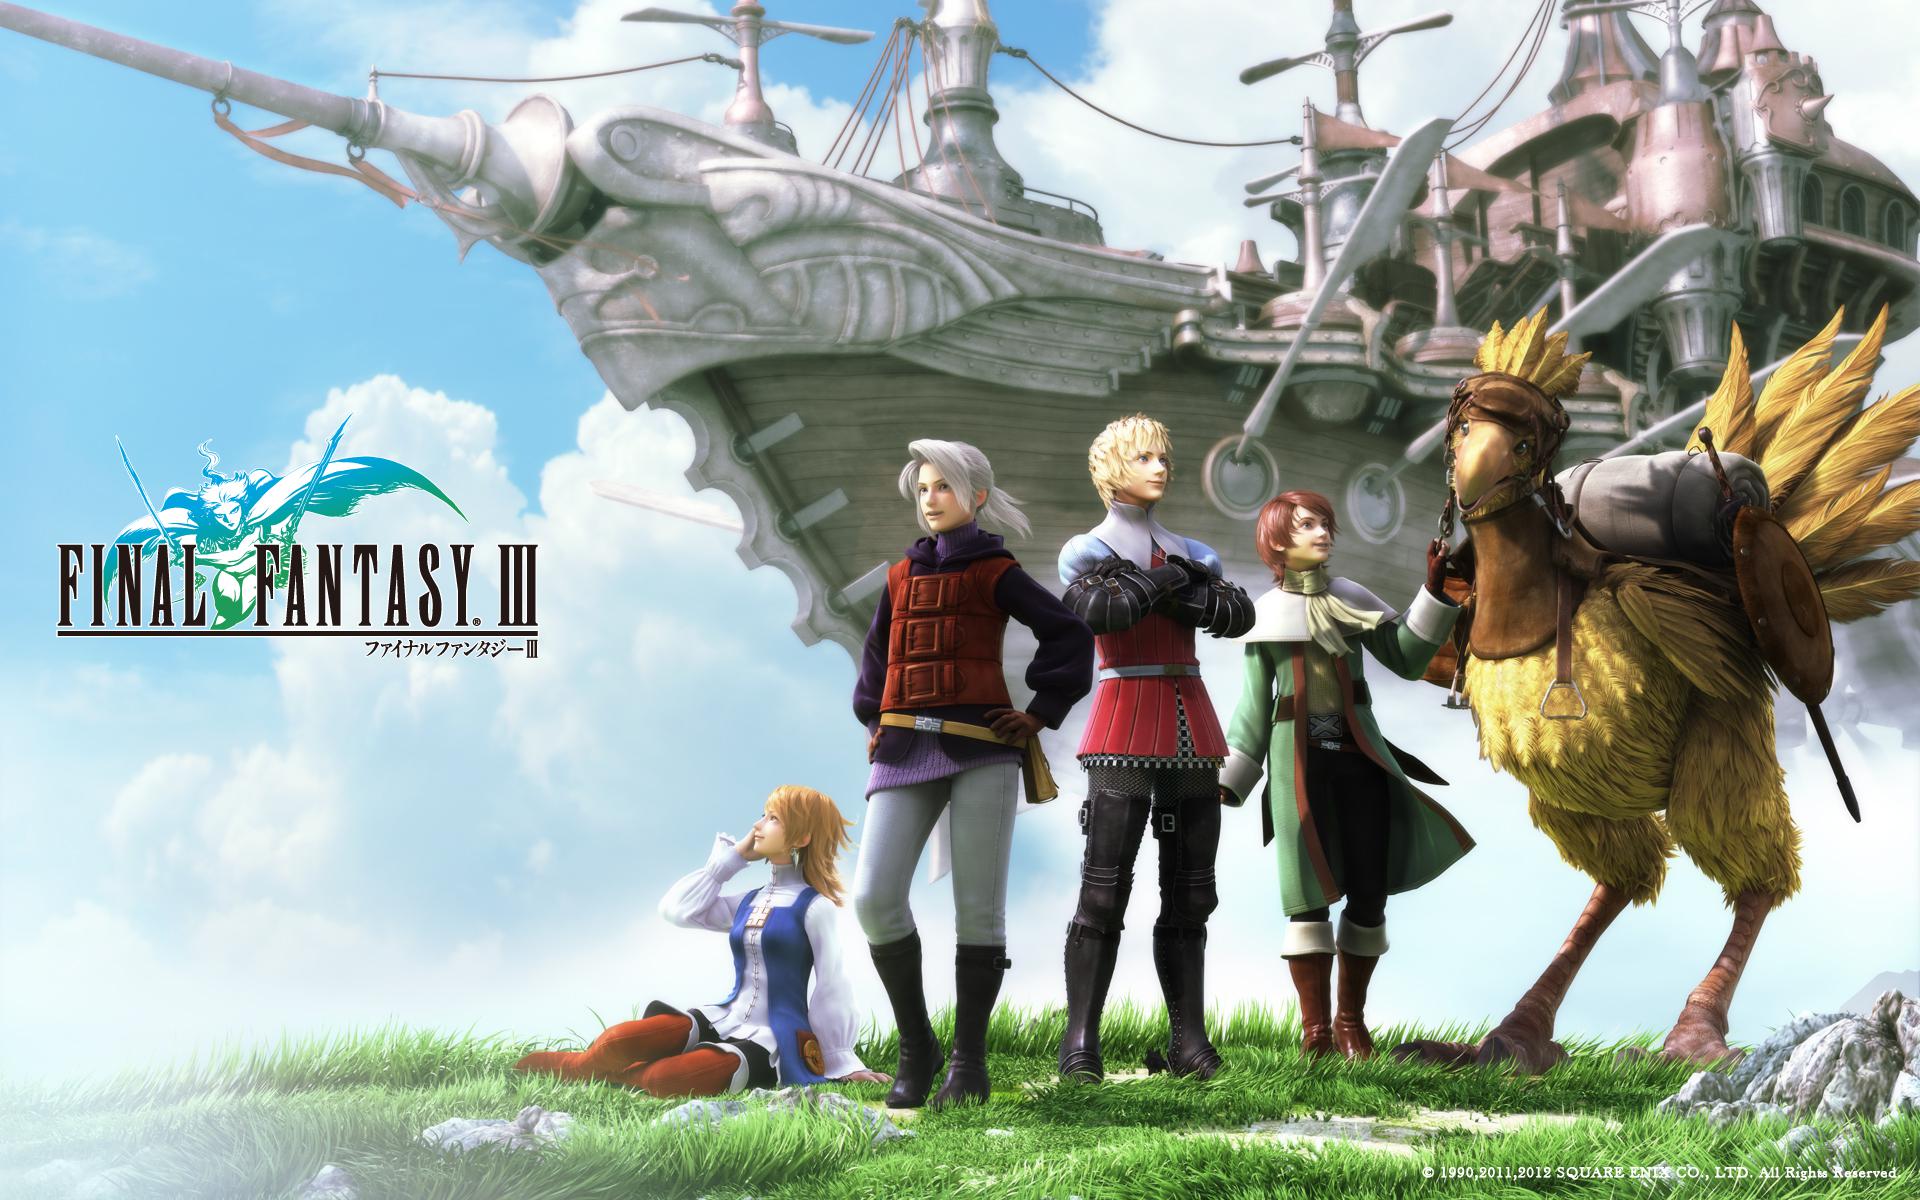 Simposio Caucho comprador Final Fantasy III mejora sus gráficos para su estreno en Steam - MeriStation